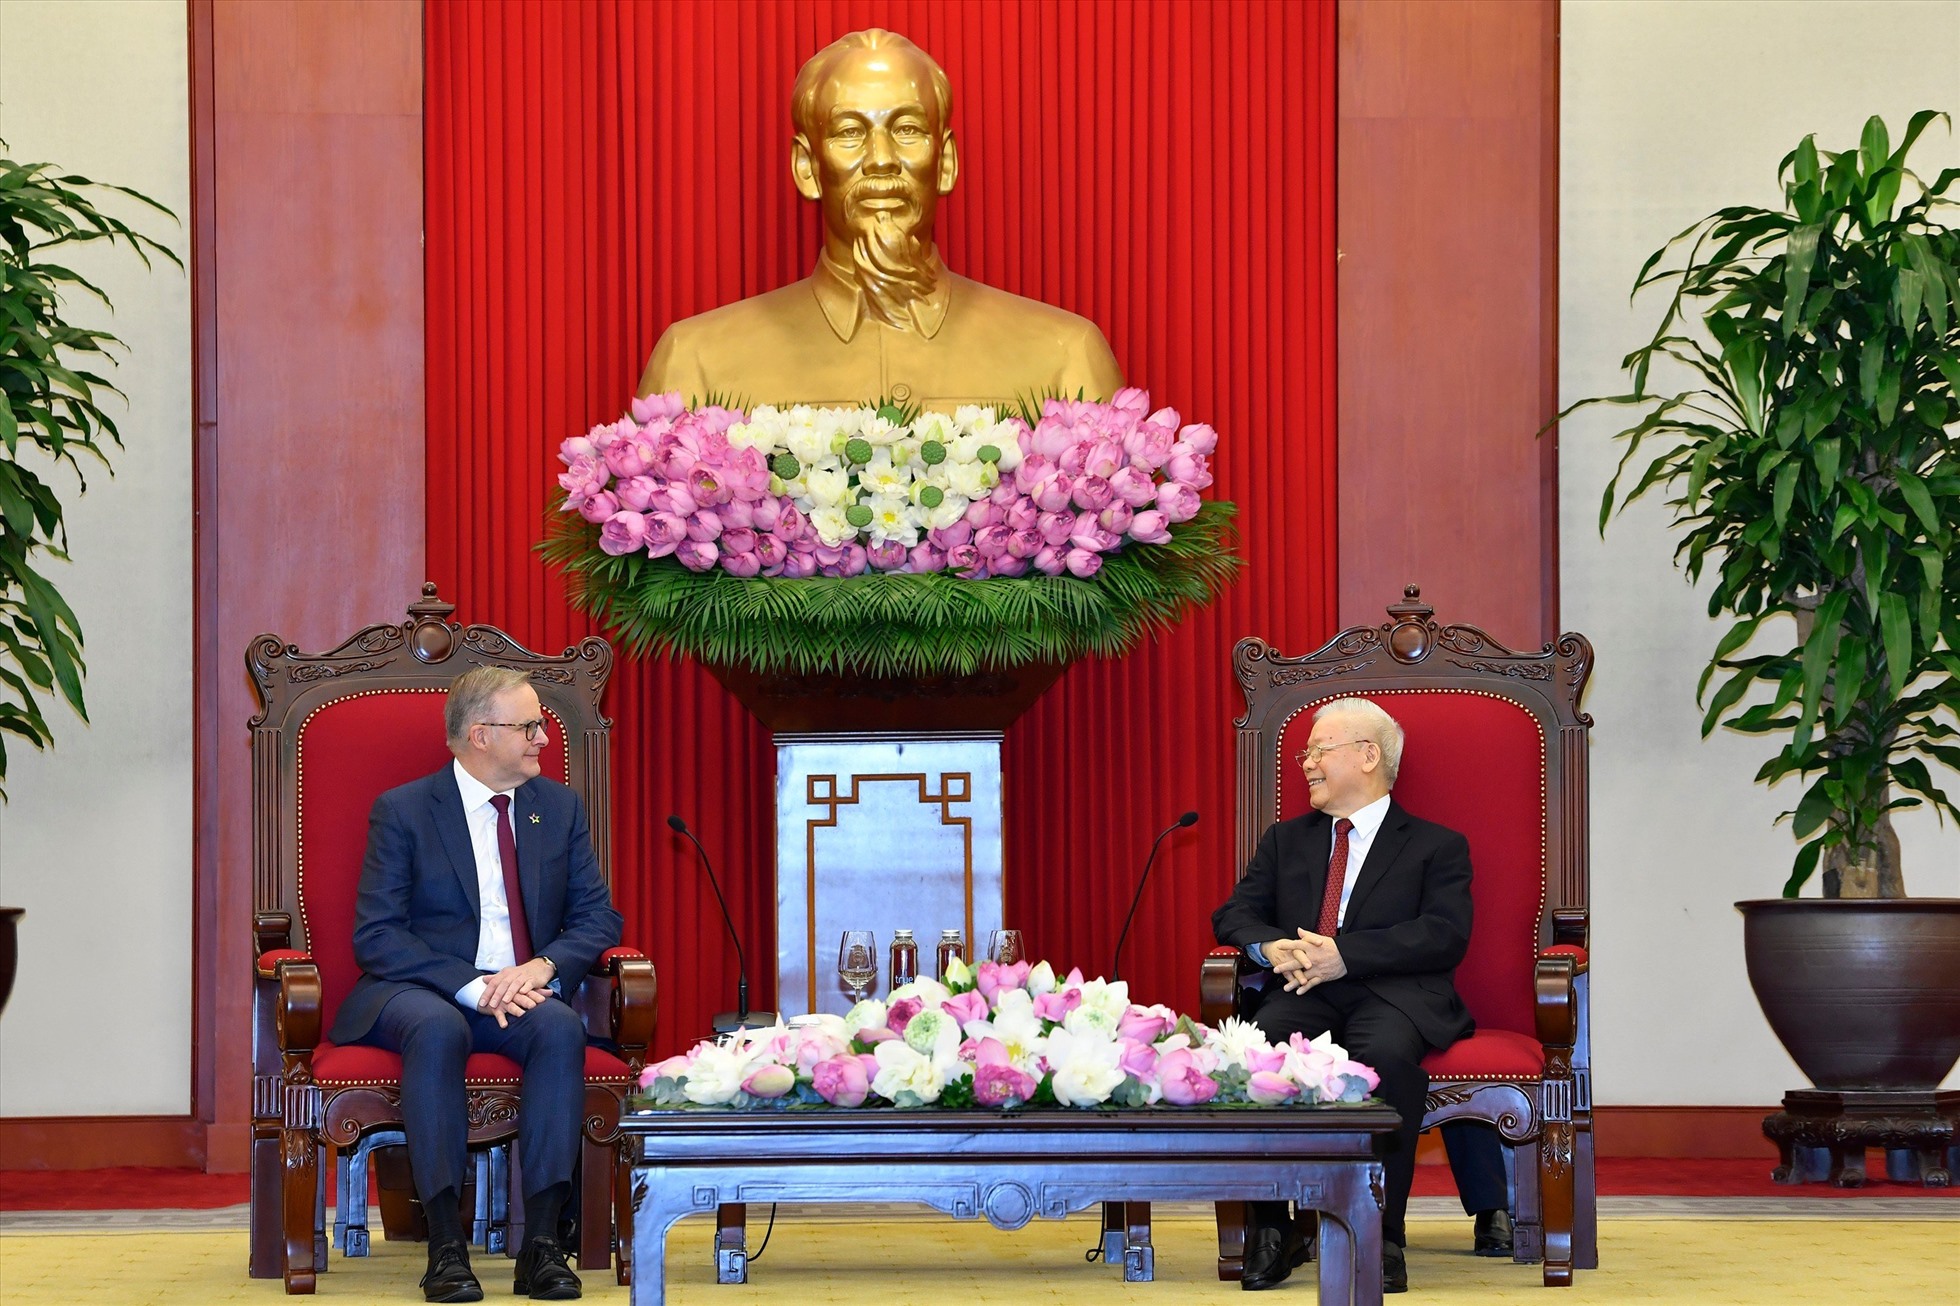 Thủ tướng Australia Anthony Albanese thăm Việt Nam trong bối cảnh năm nay hai nước kỷ niệm 50 năm thiết lập quan hệ ngoại giao (26.2.1973 - 26.2.2023) và 5 năm quan hệ đối tác chiến lược (15.3.2018 - 15.3.2023). Ảnh: Hải Nguyễn